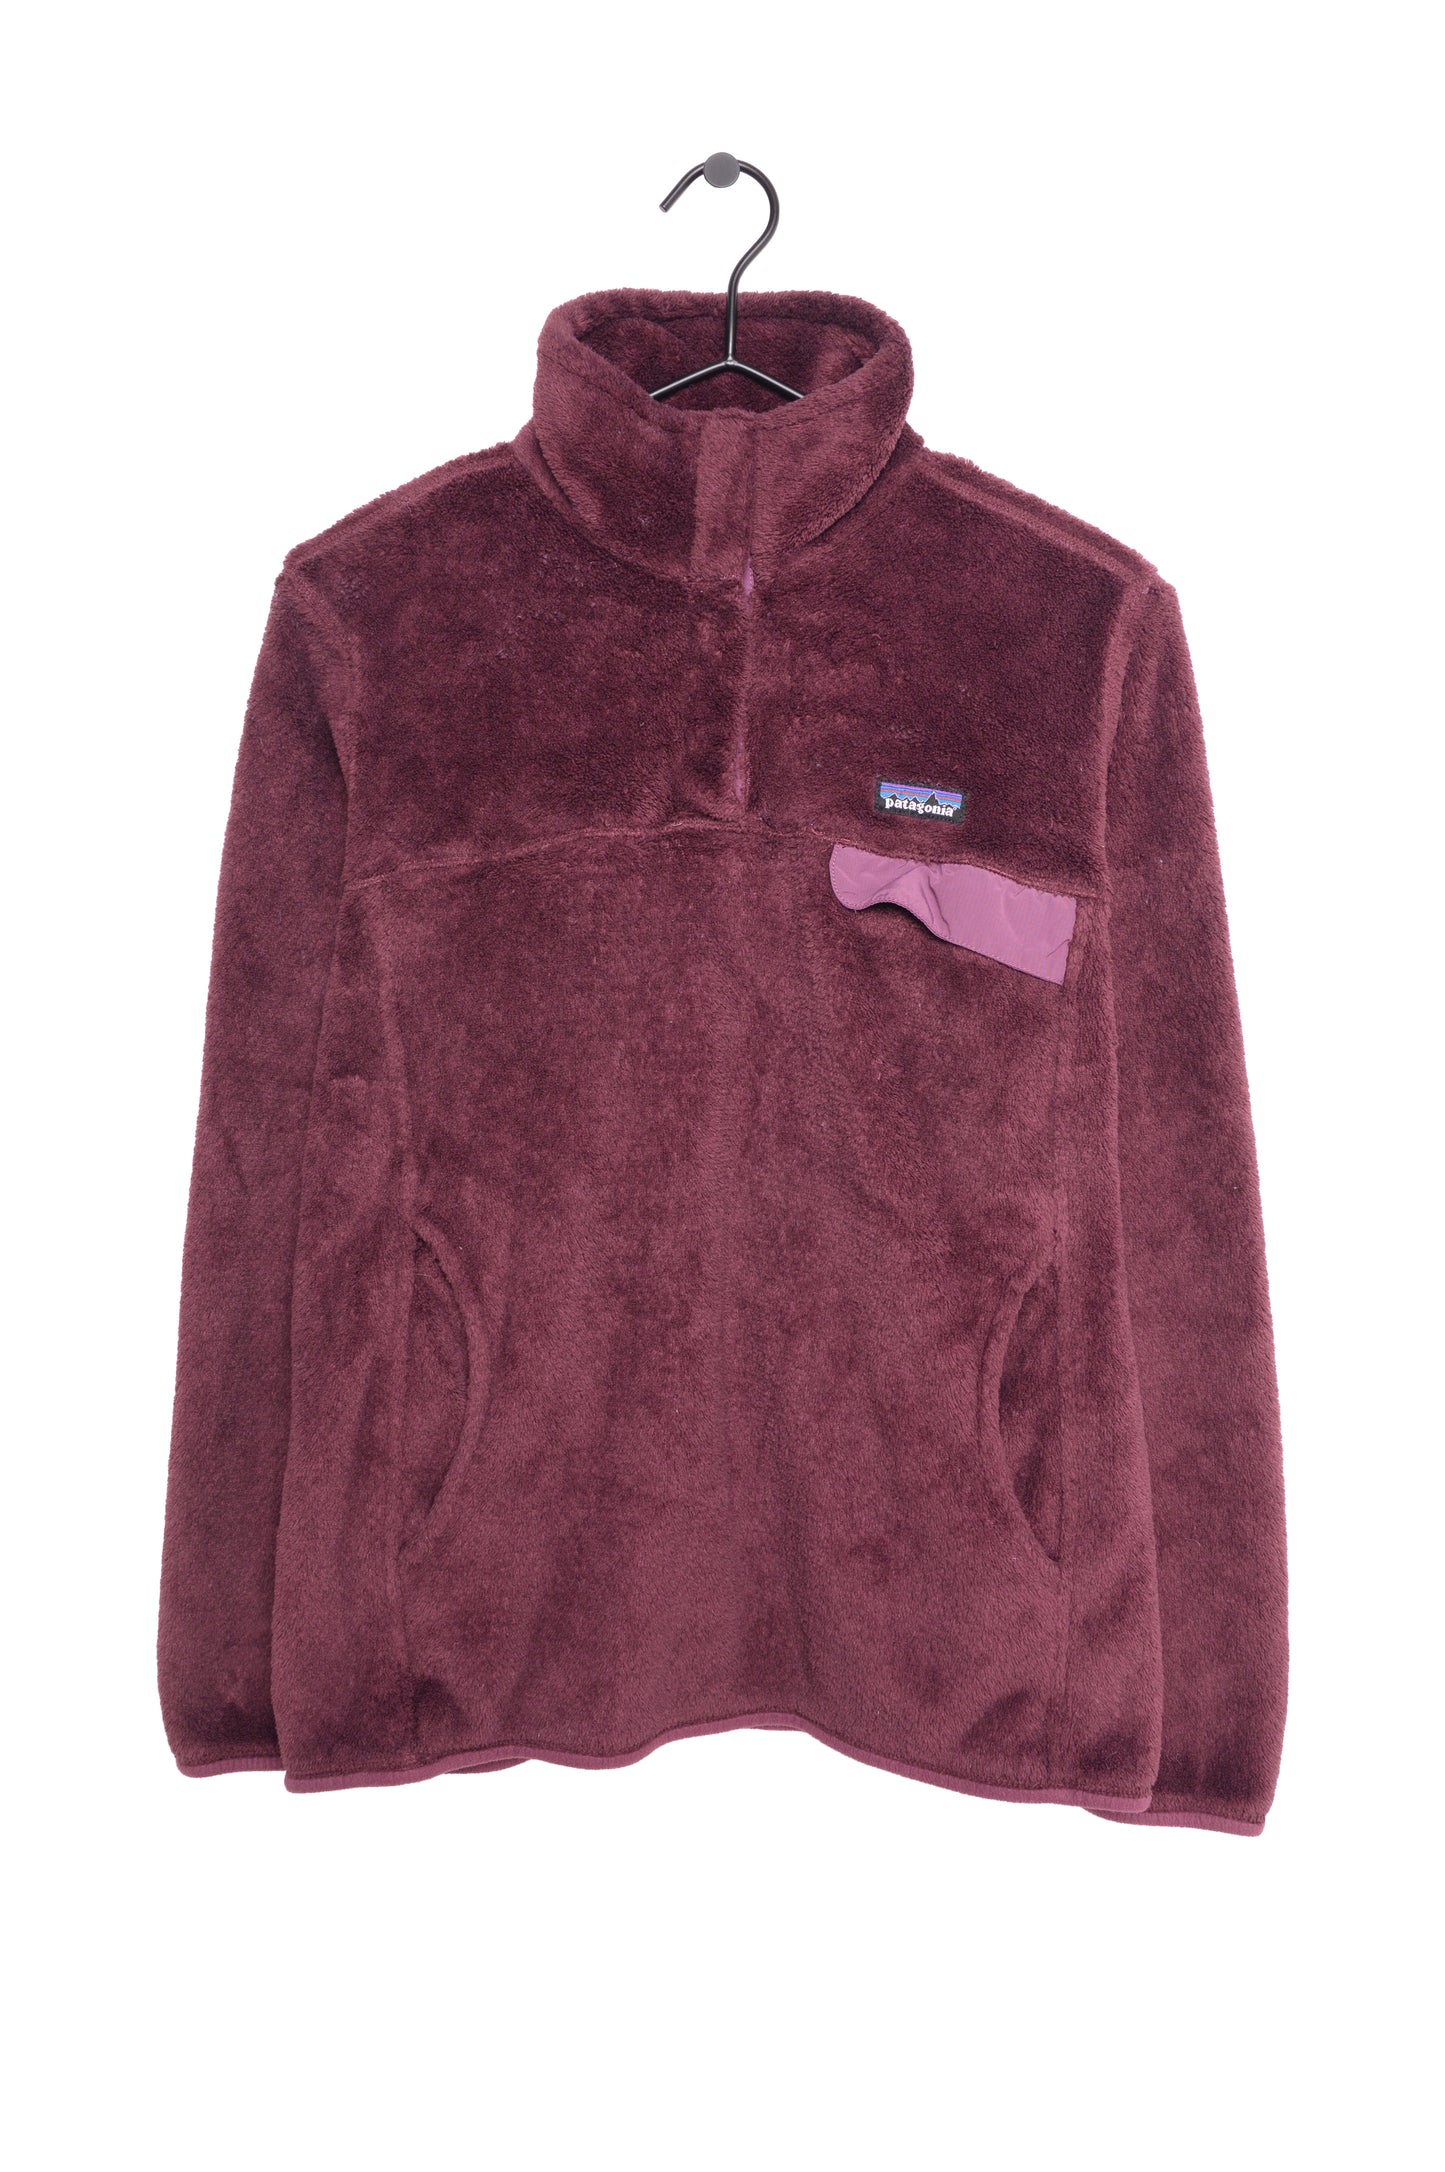 Patagonia Fleece Sweatshirt